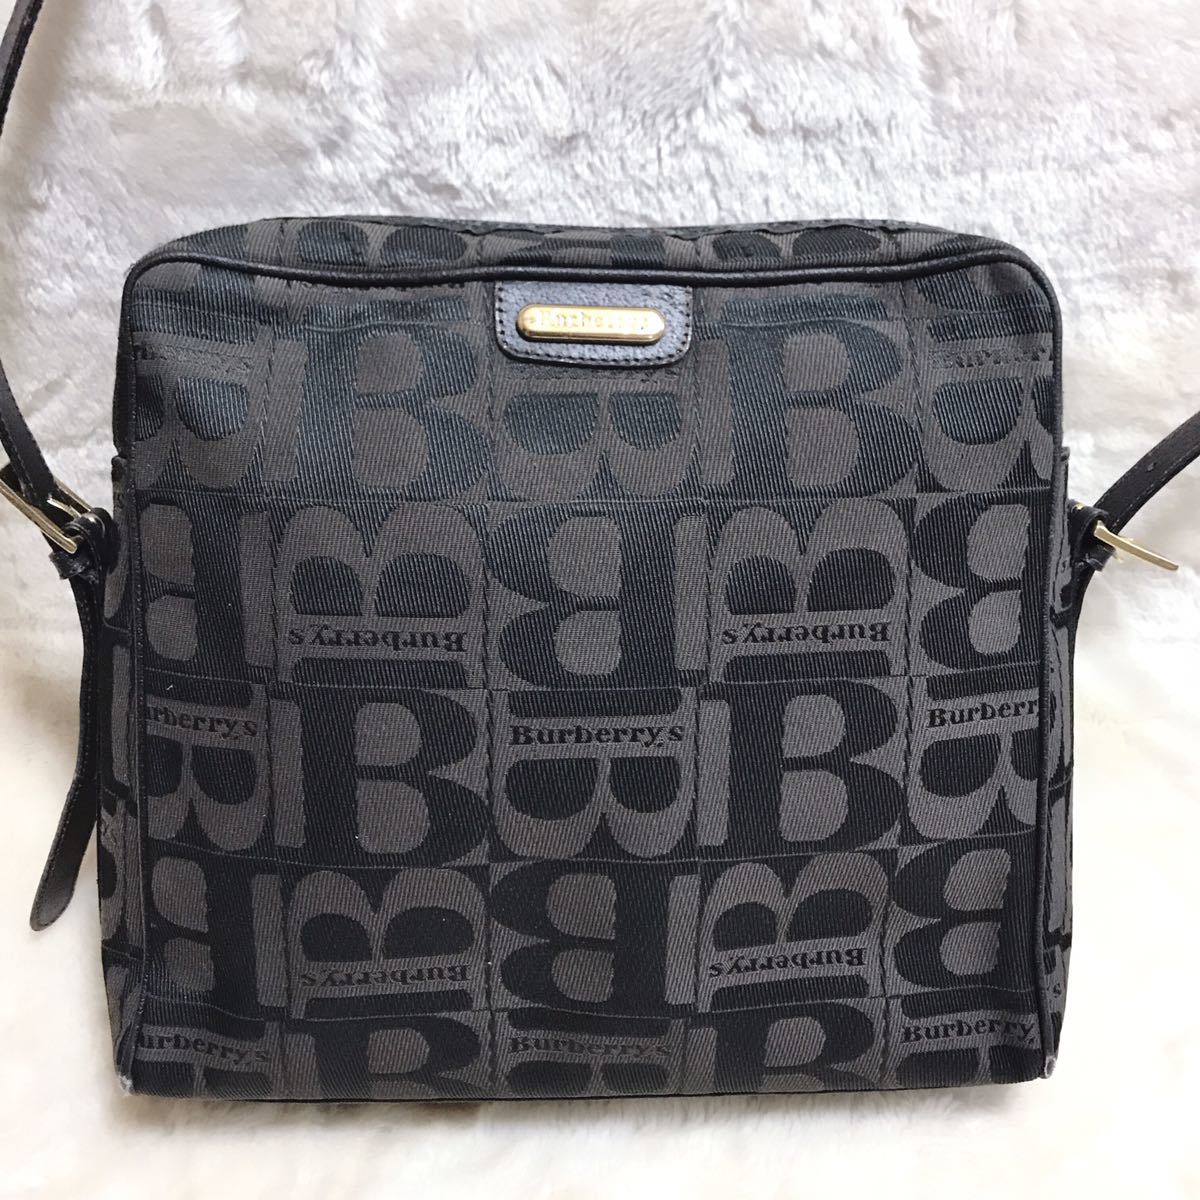  редкий модель Burberry сумка на плечо B рисунок парусина кожа чёрный брендовая сумка наклонный .. плечо ..BURBERRY Burberry общий рисунок 